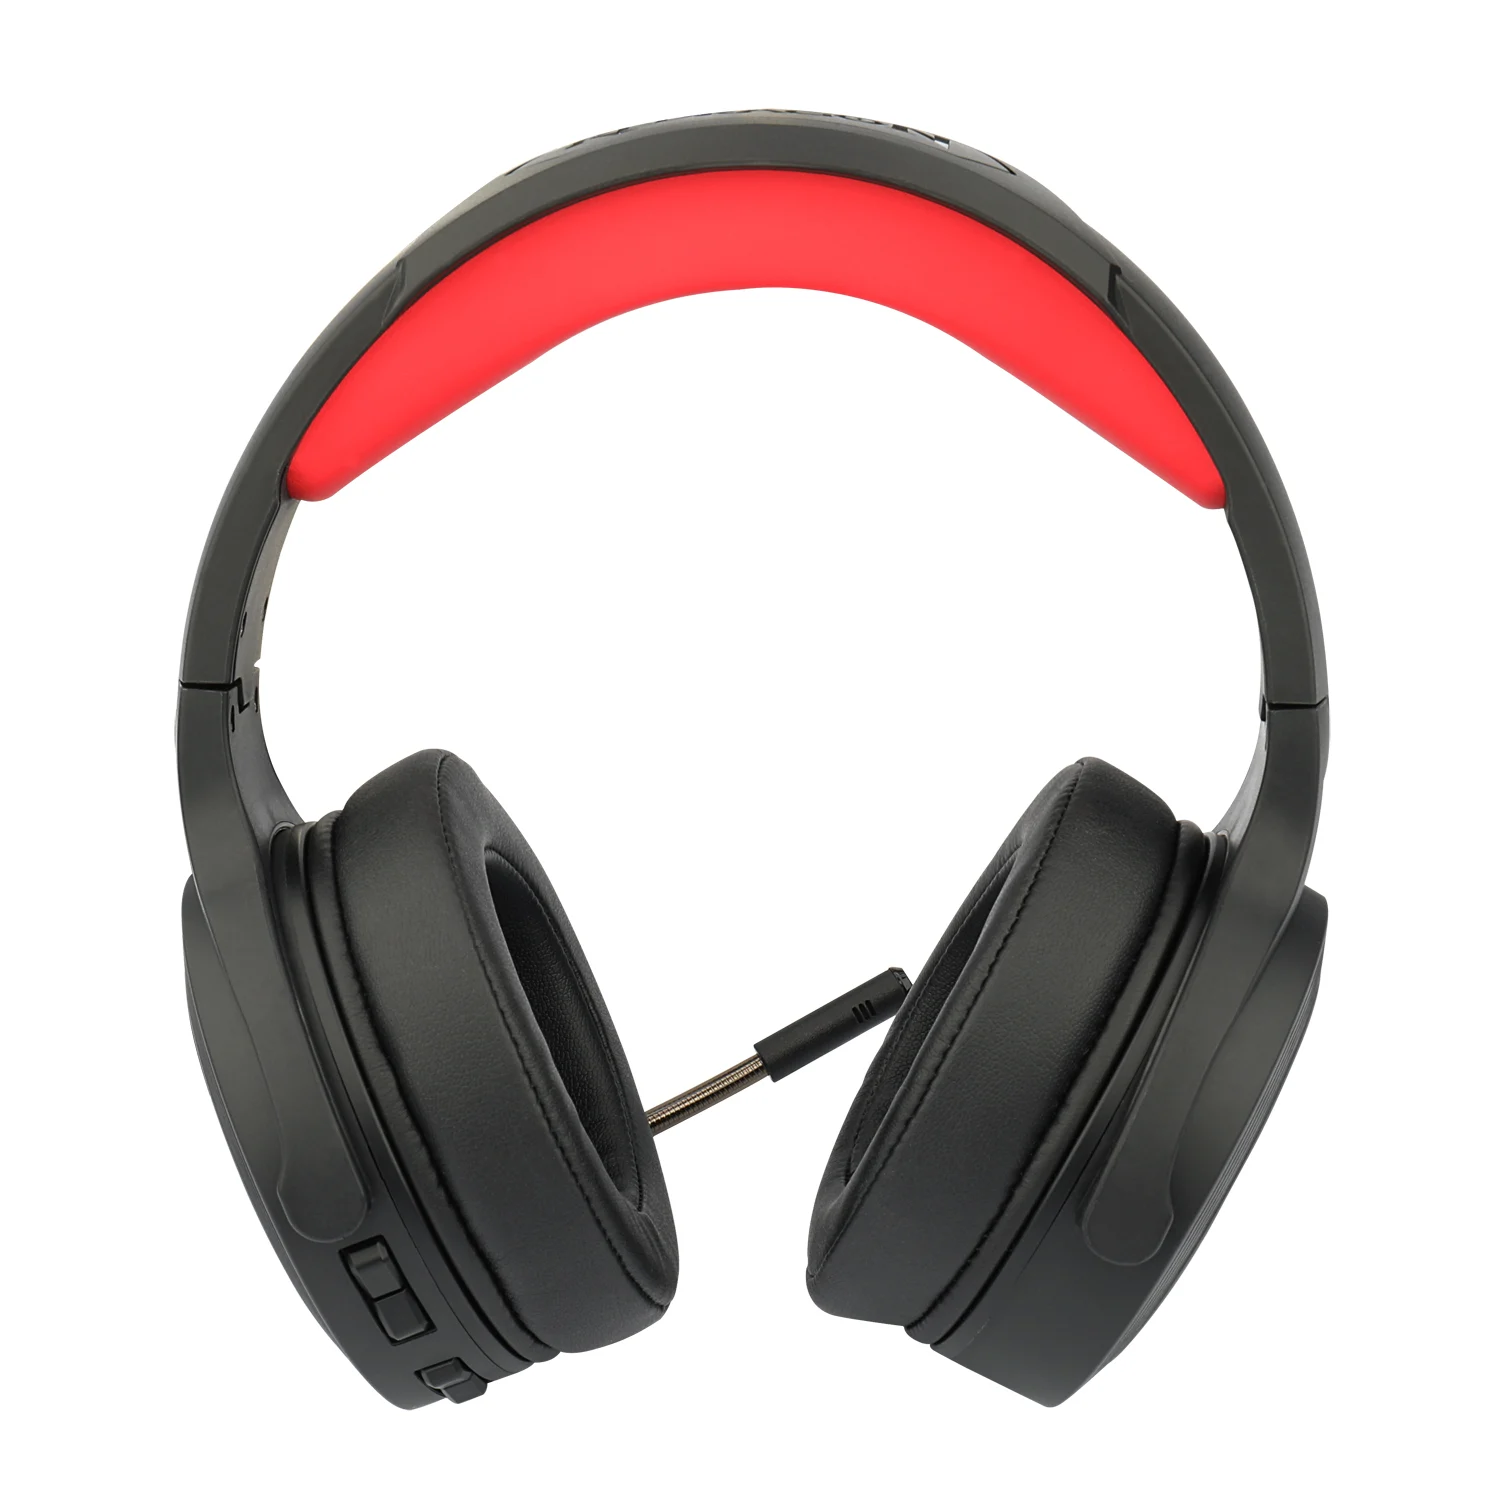 Headset Gamer Redragon Pelops H818 Wireless / 2.4GHZ / com Transmissor USB- Preto e Vermelho